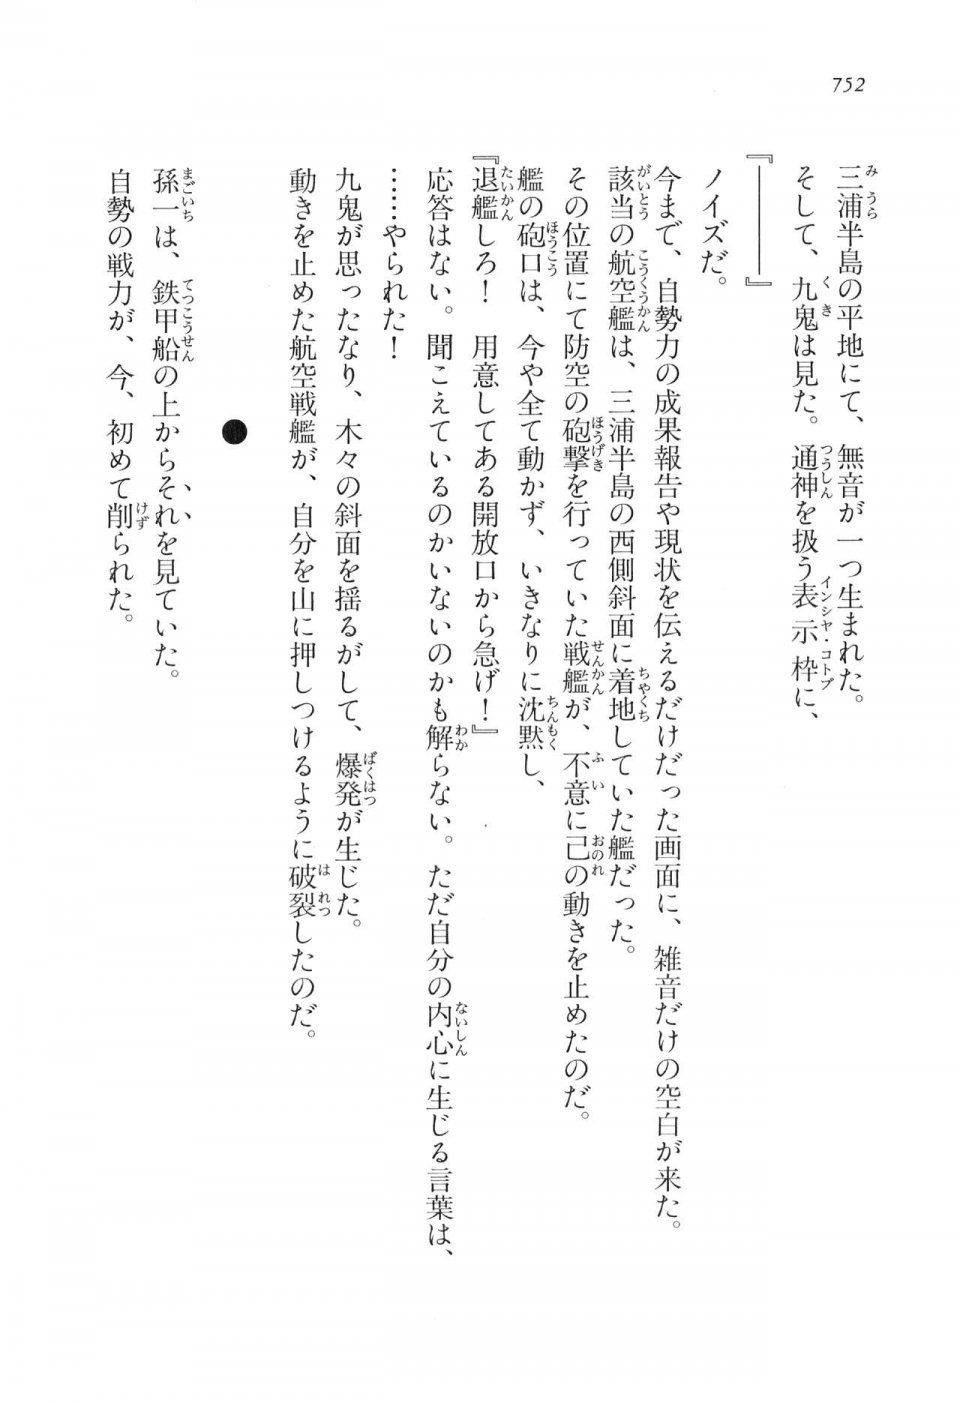 Kyoukai Senjou no Horizon LN Vol 16(7A) - Photo #752